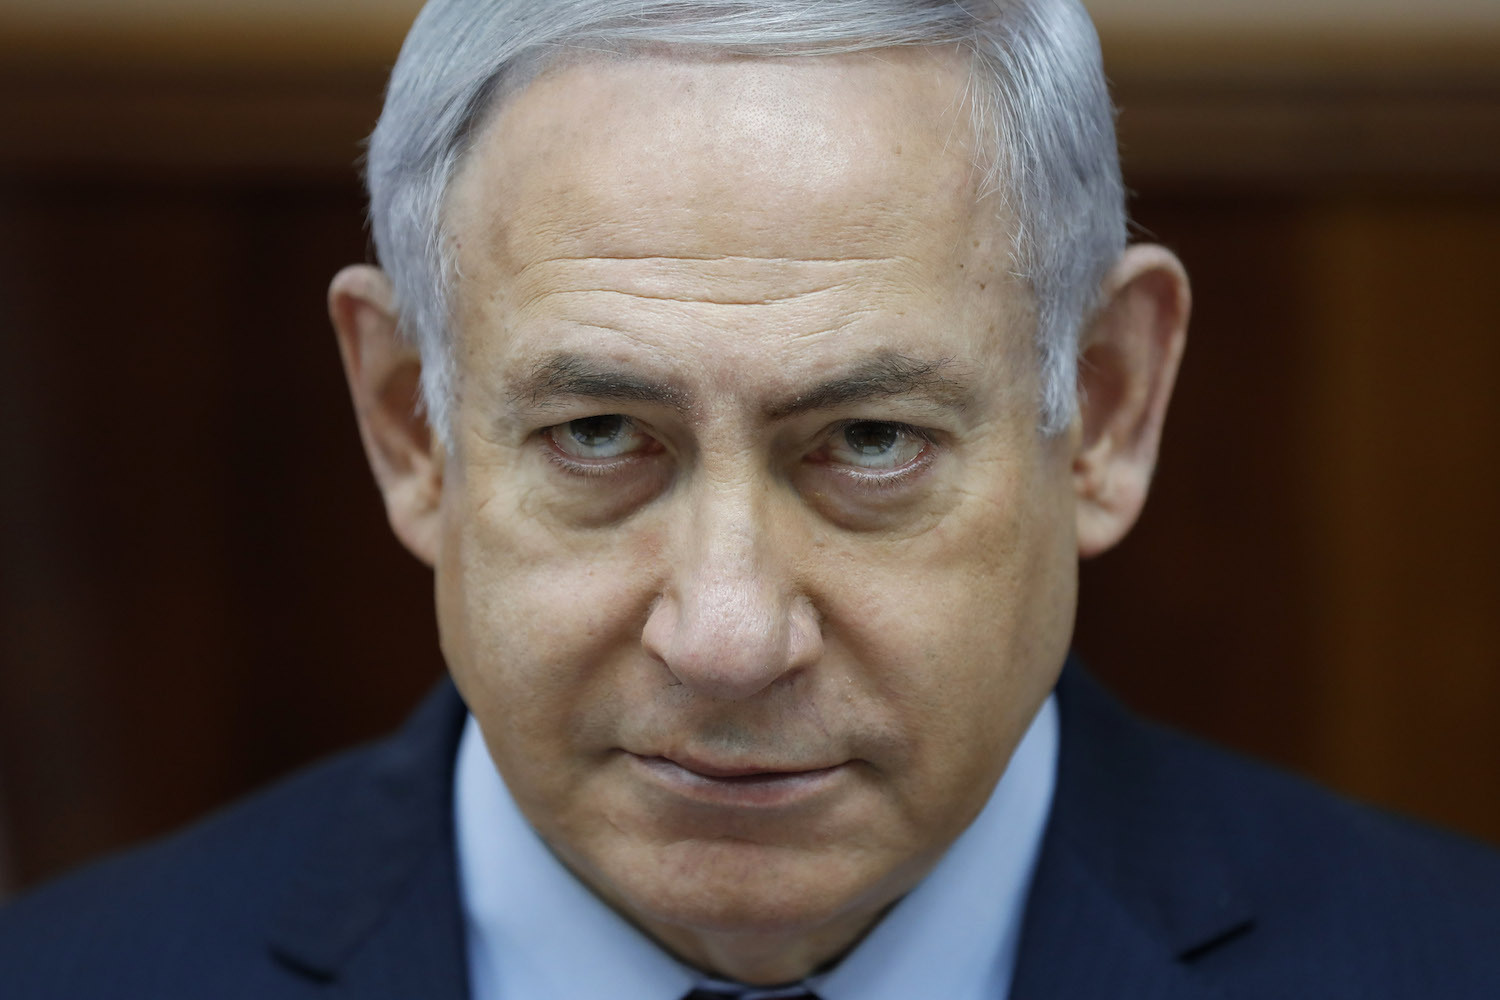 نتانیاهو: برجام توافقی بی نظیر برای ایران بود؛ به آنها میلیاردها دلار پول داد تا امپراطوری شان را بسازند